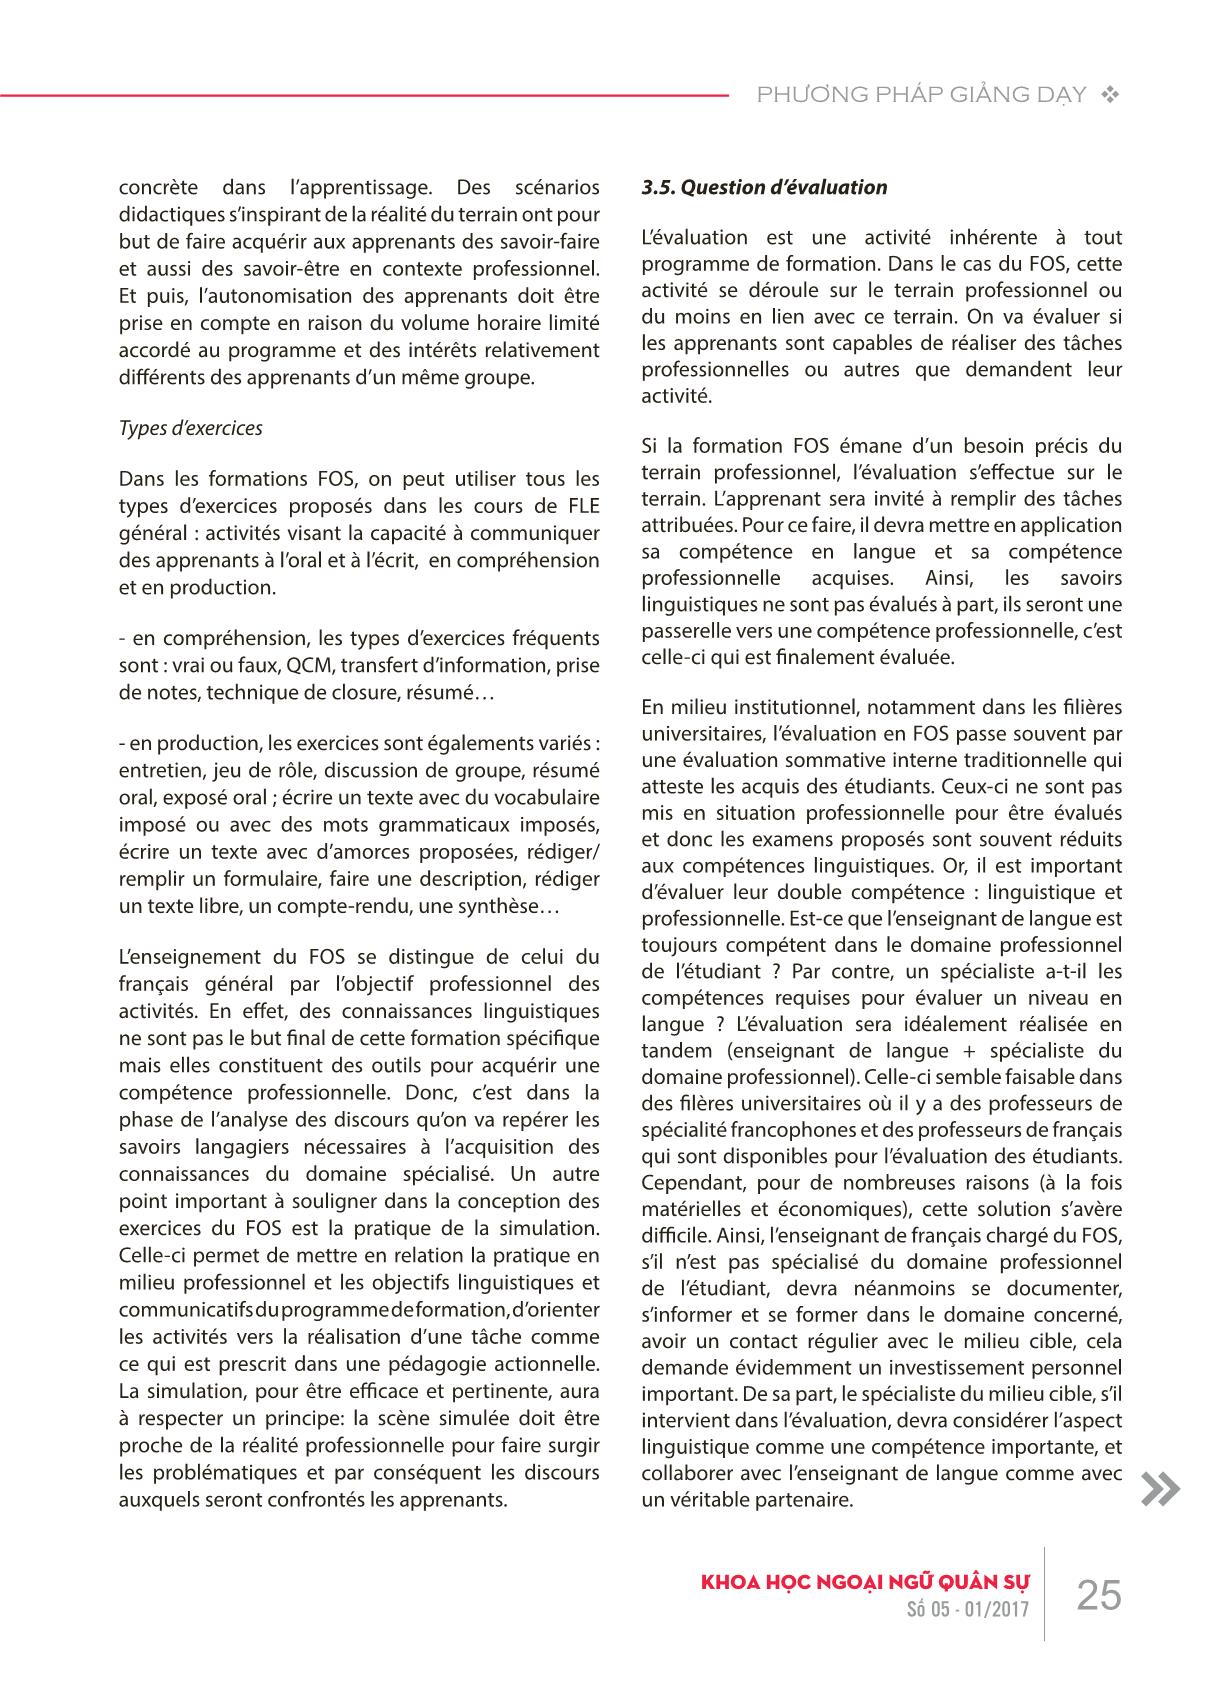 Phương pháp giảng dạy tiếng Pháp theo mục tiêu chuyên biệt trang 7